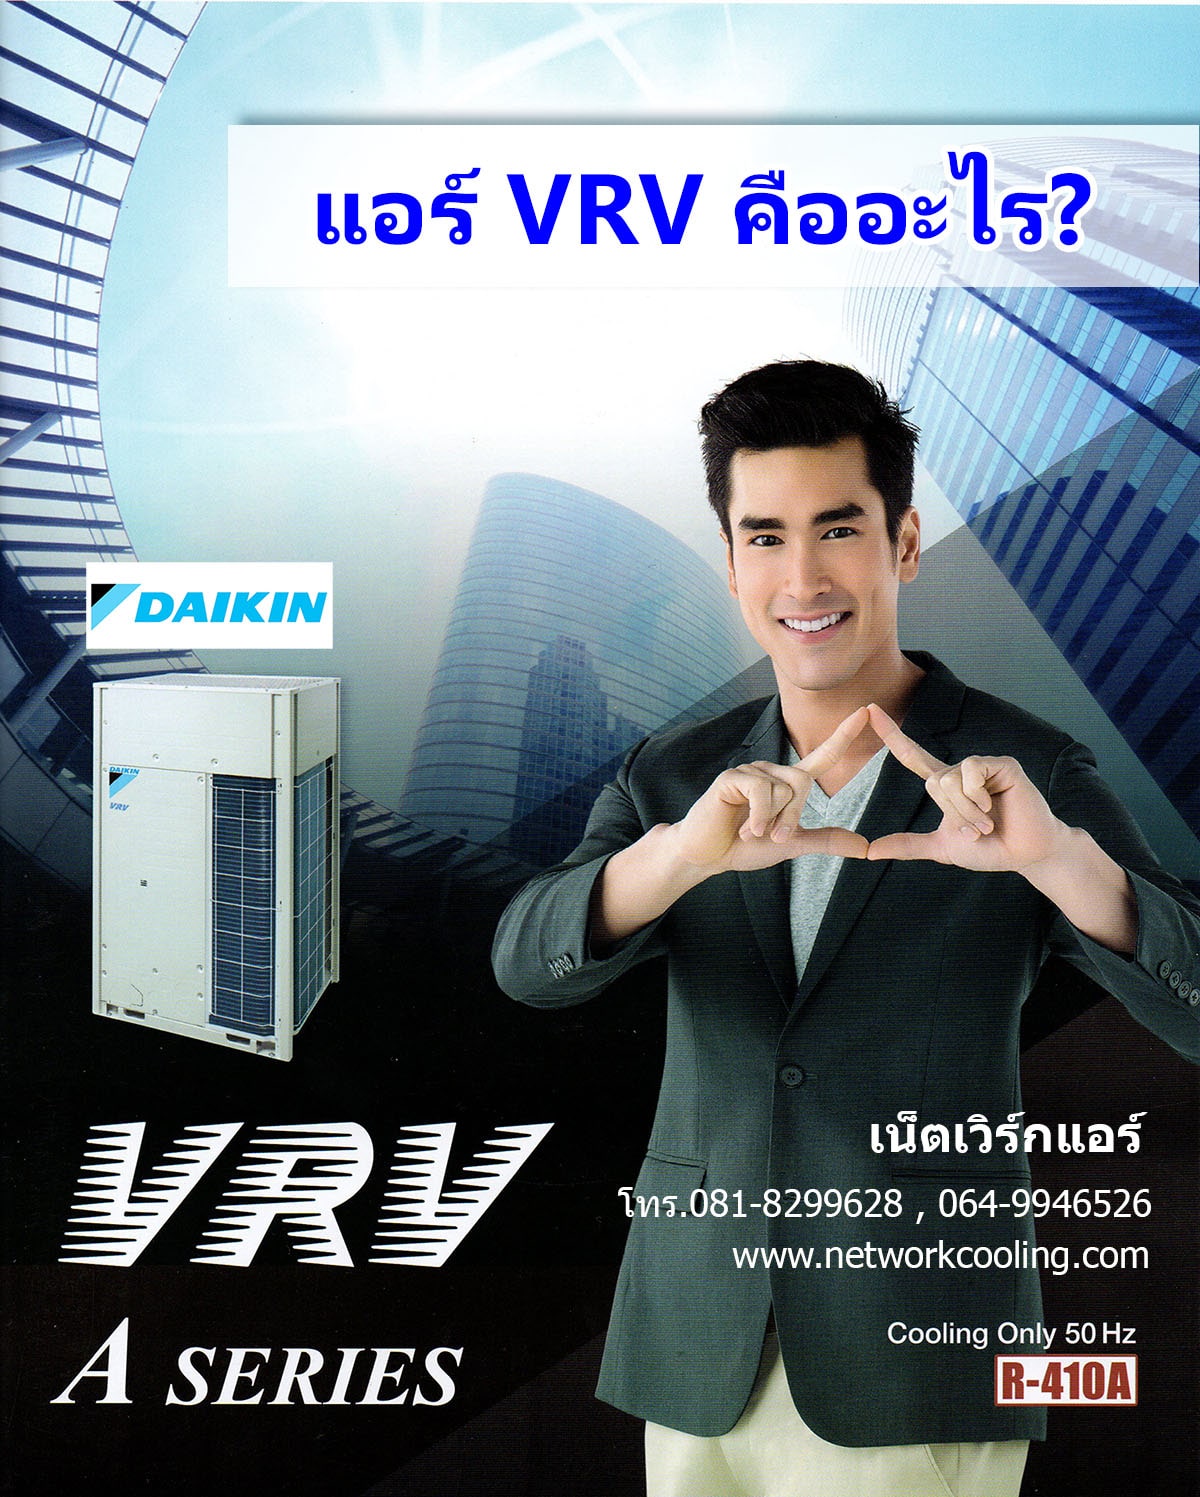 แอร์ VRV จากไดกื้น(Daikin) คืออะไร ดีอย่างไร?